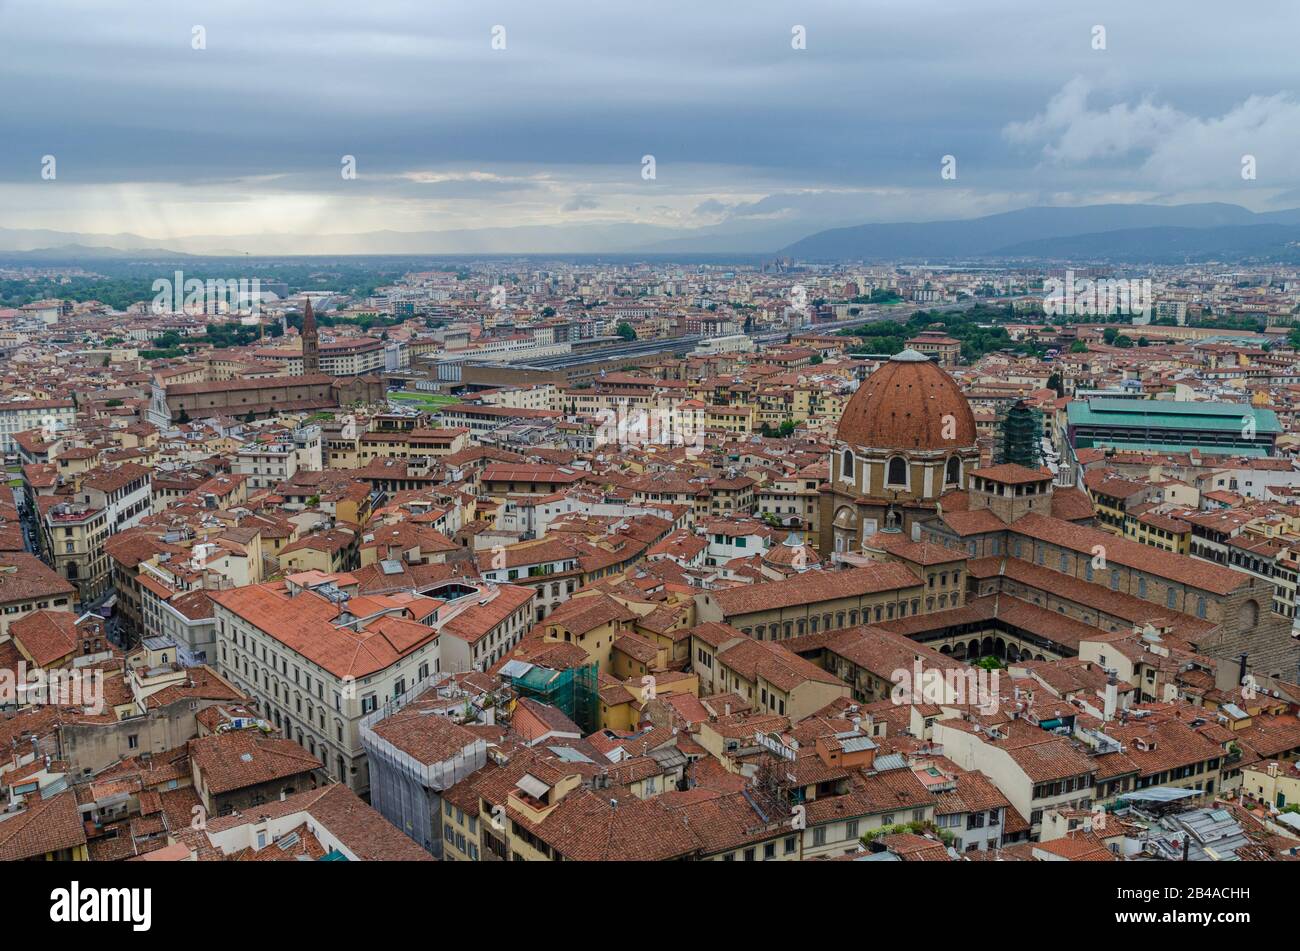 Vue imprenable sur la ville de Florence depuis le Campanile di Giotto de Florence, Italie Banque D'Images